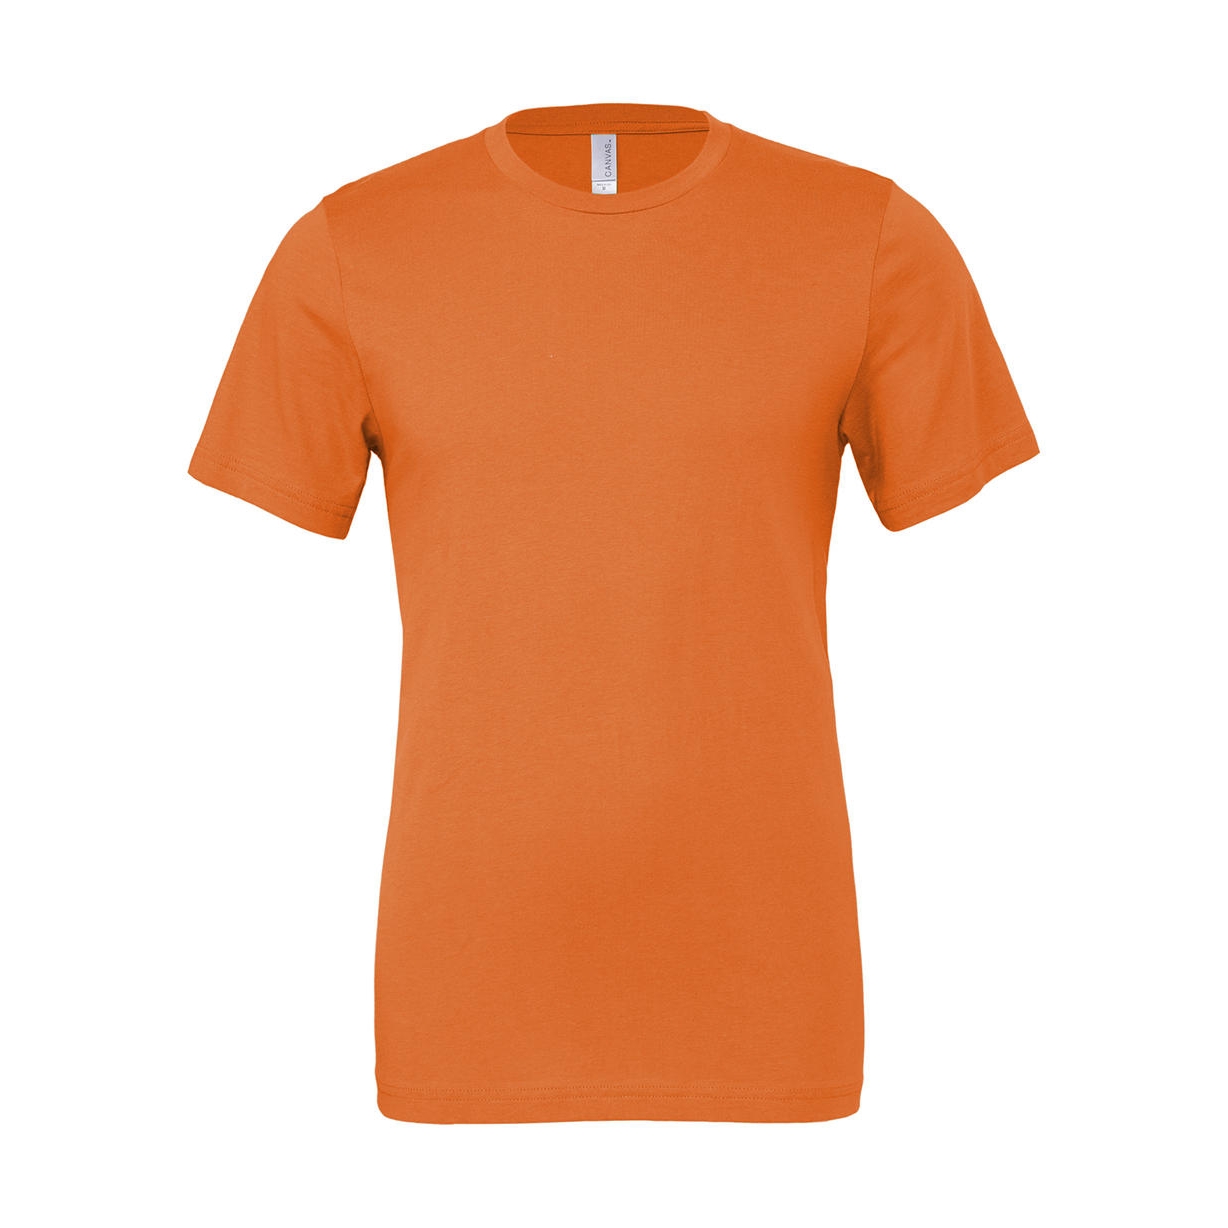 Tričko Bella Jersey - oranžové, S